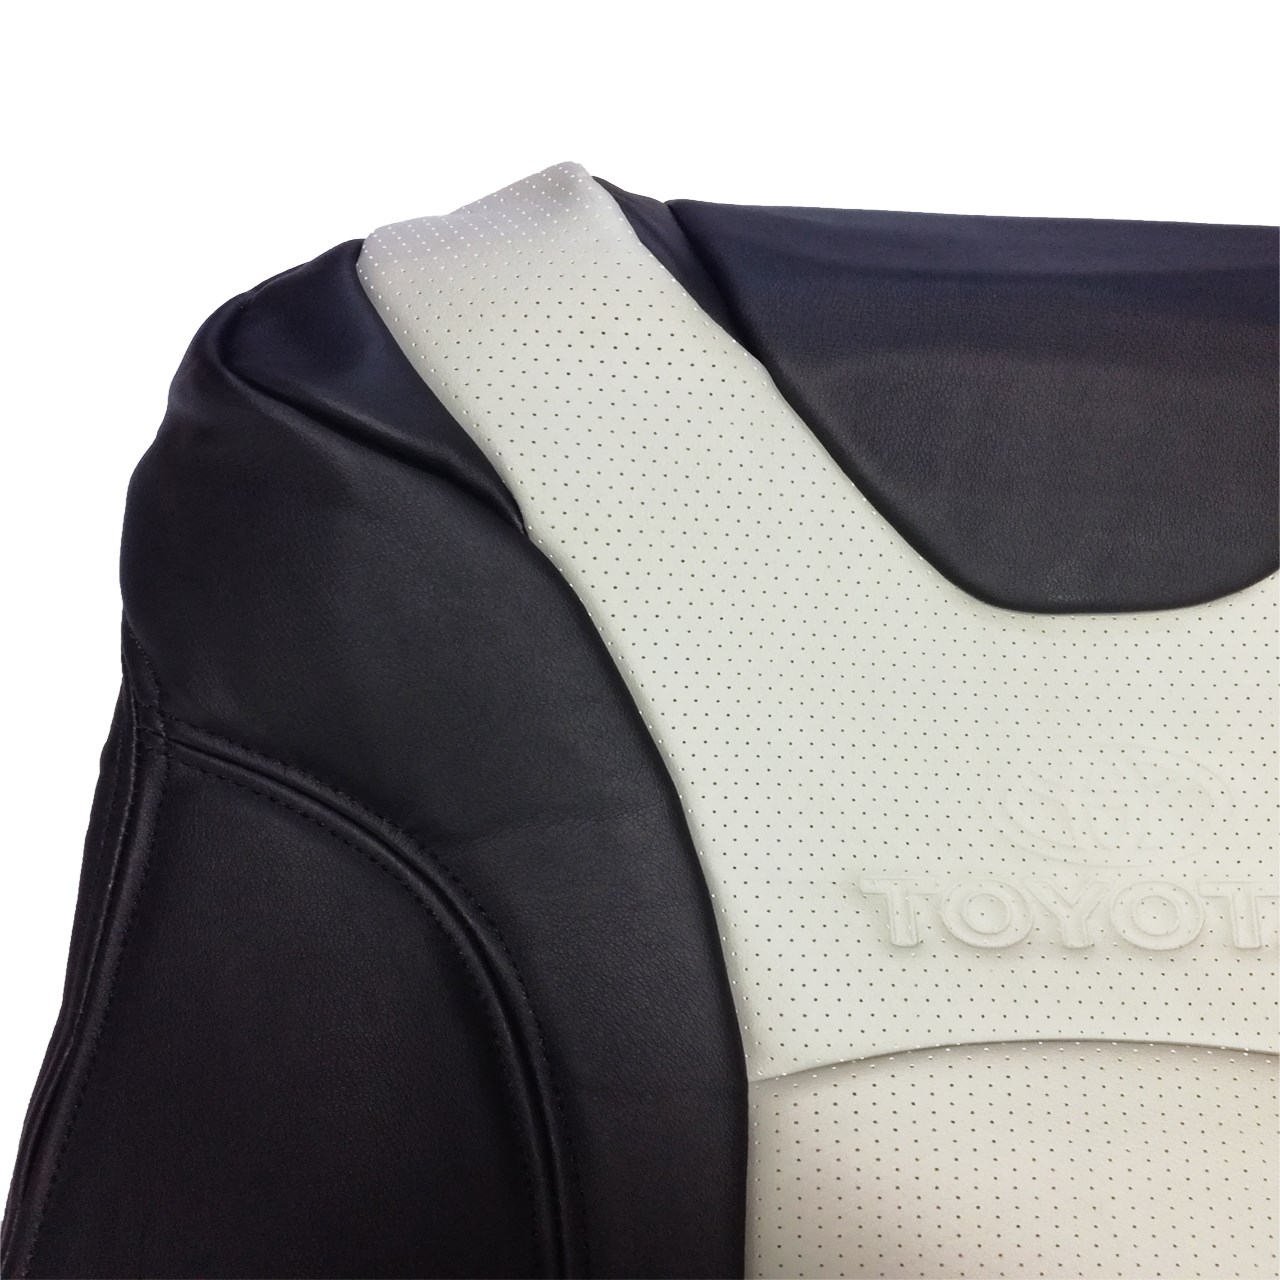 روکش صندلی خودرو ایپک مناسب برای تویوتا پریوس